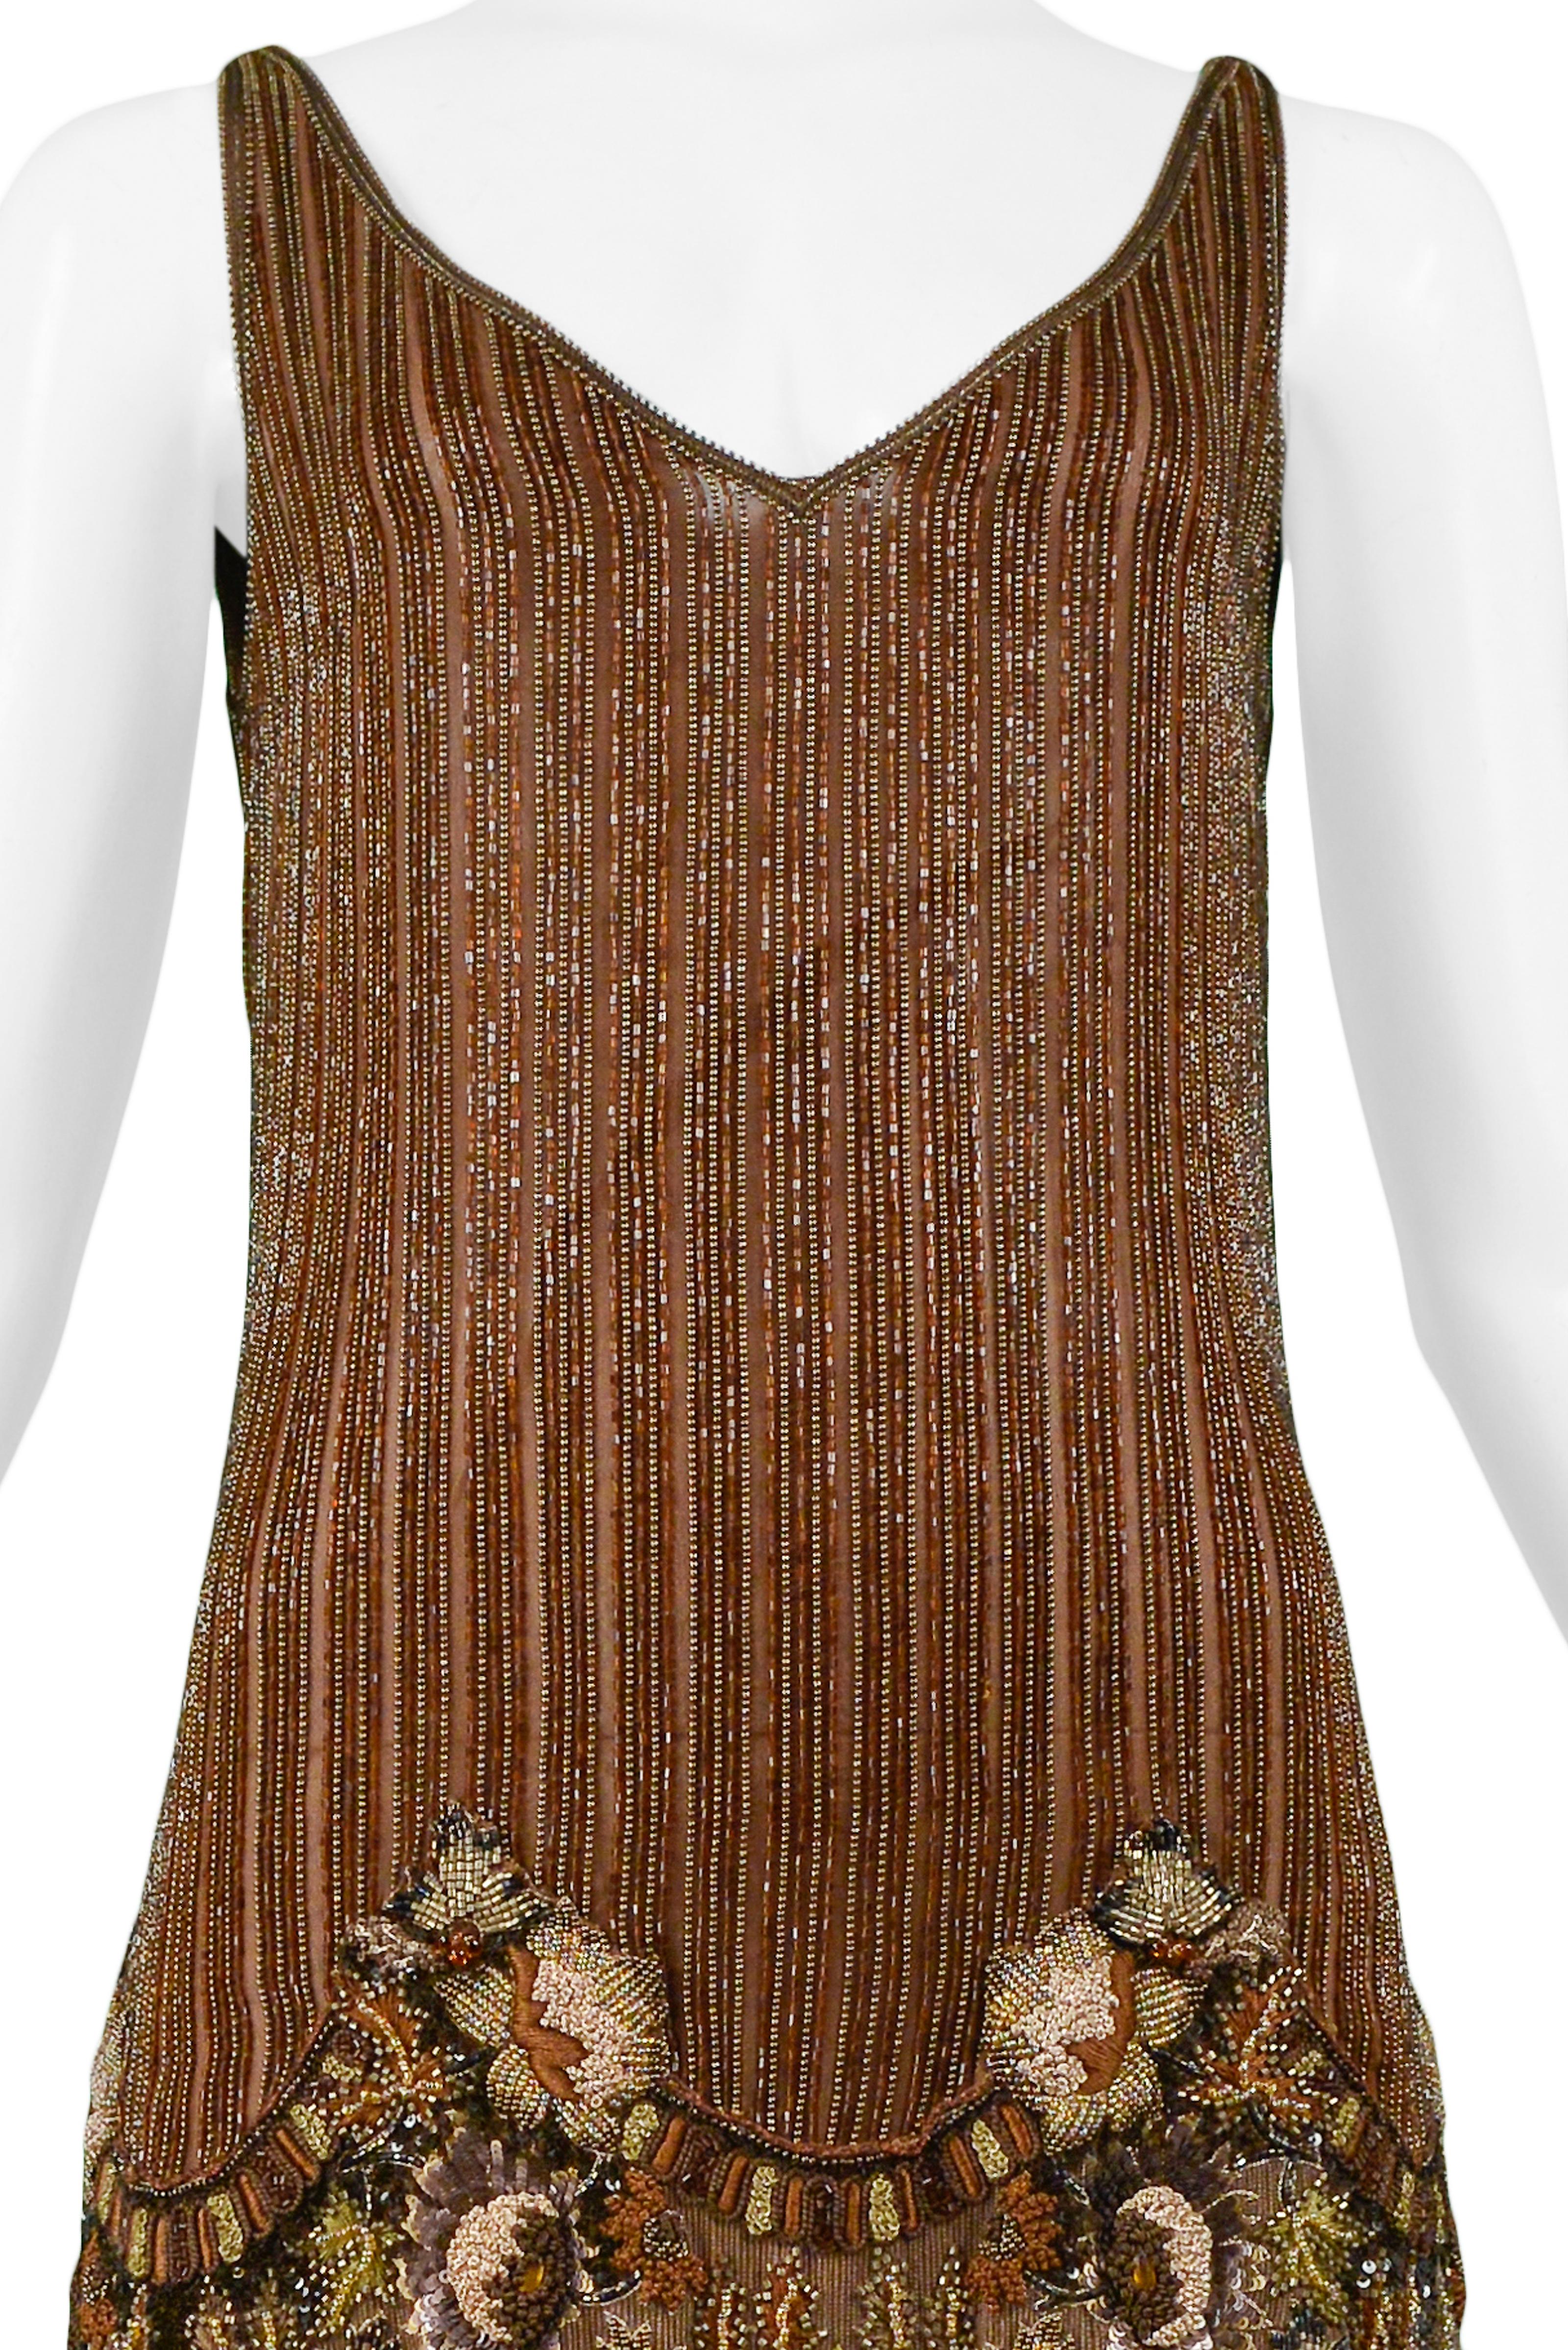 beaded dress vintage